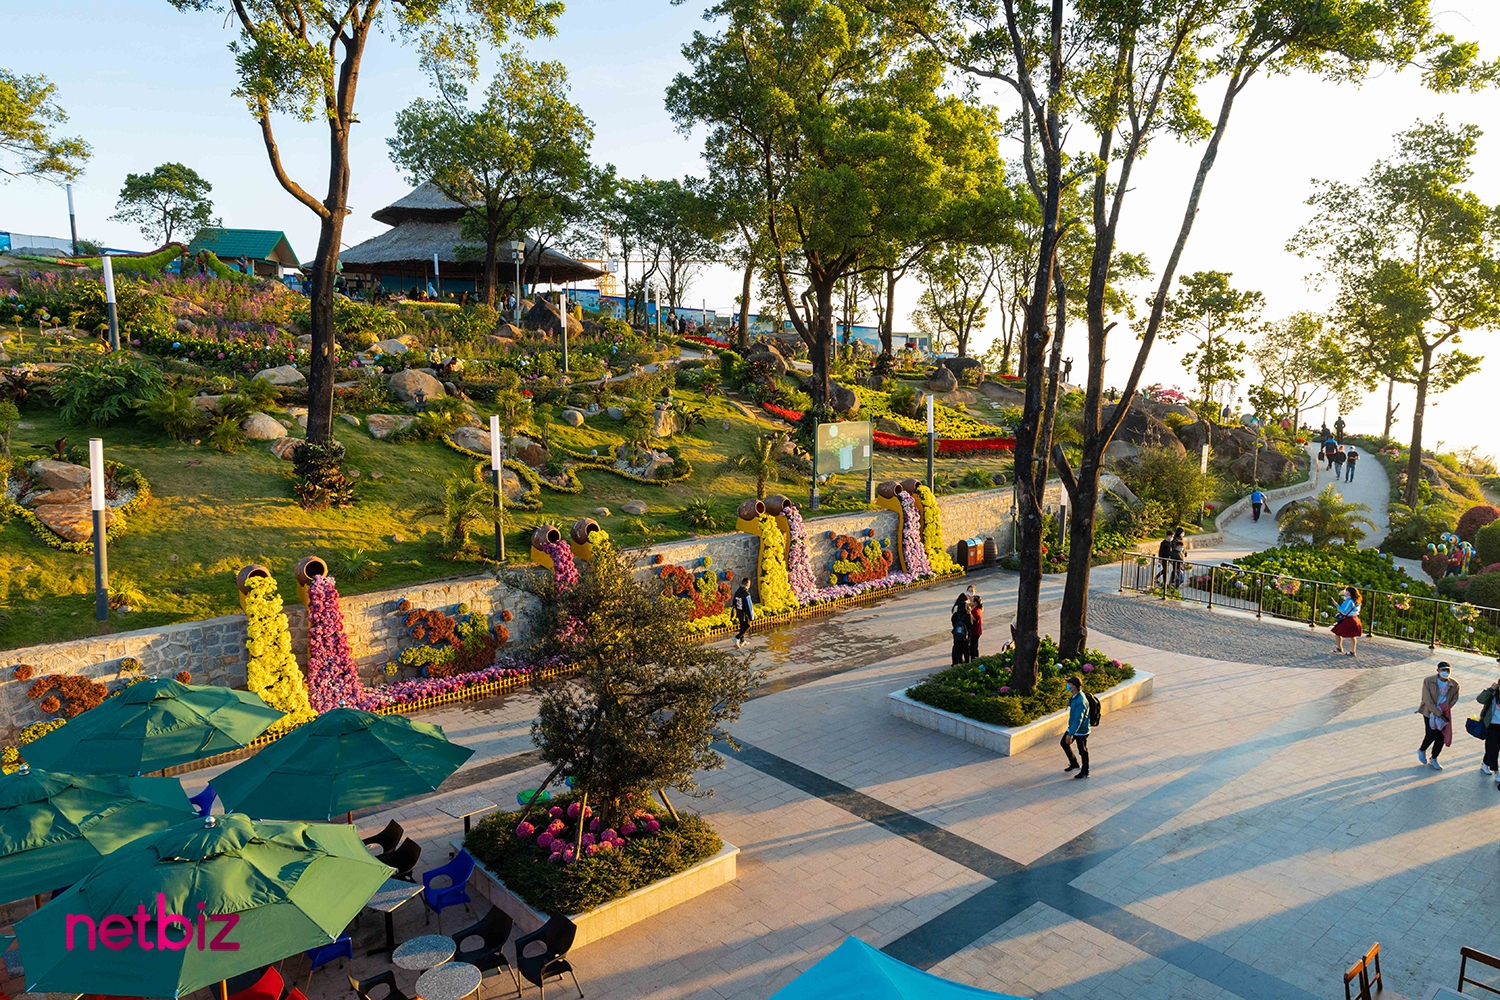 Choáng ngợp khung cảnh núi Bà Đen, nơi được cho là "nóc nhà Nam Bộ, mật mã kiến trúc Việt"